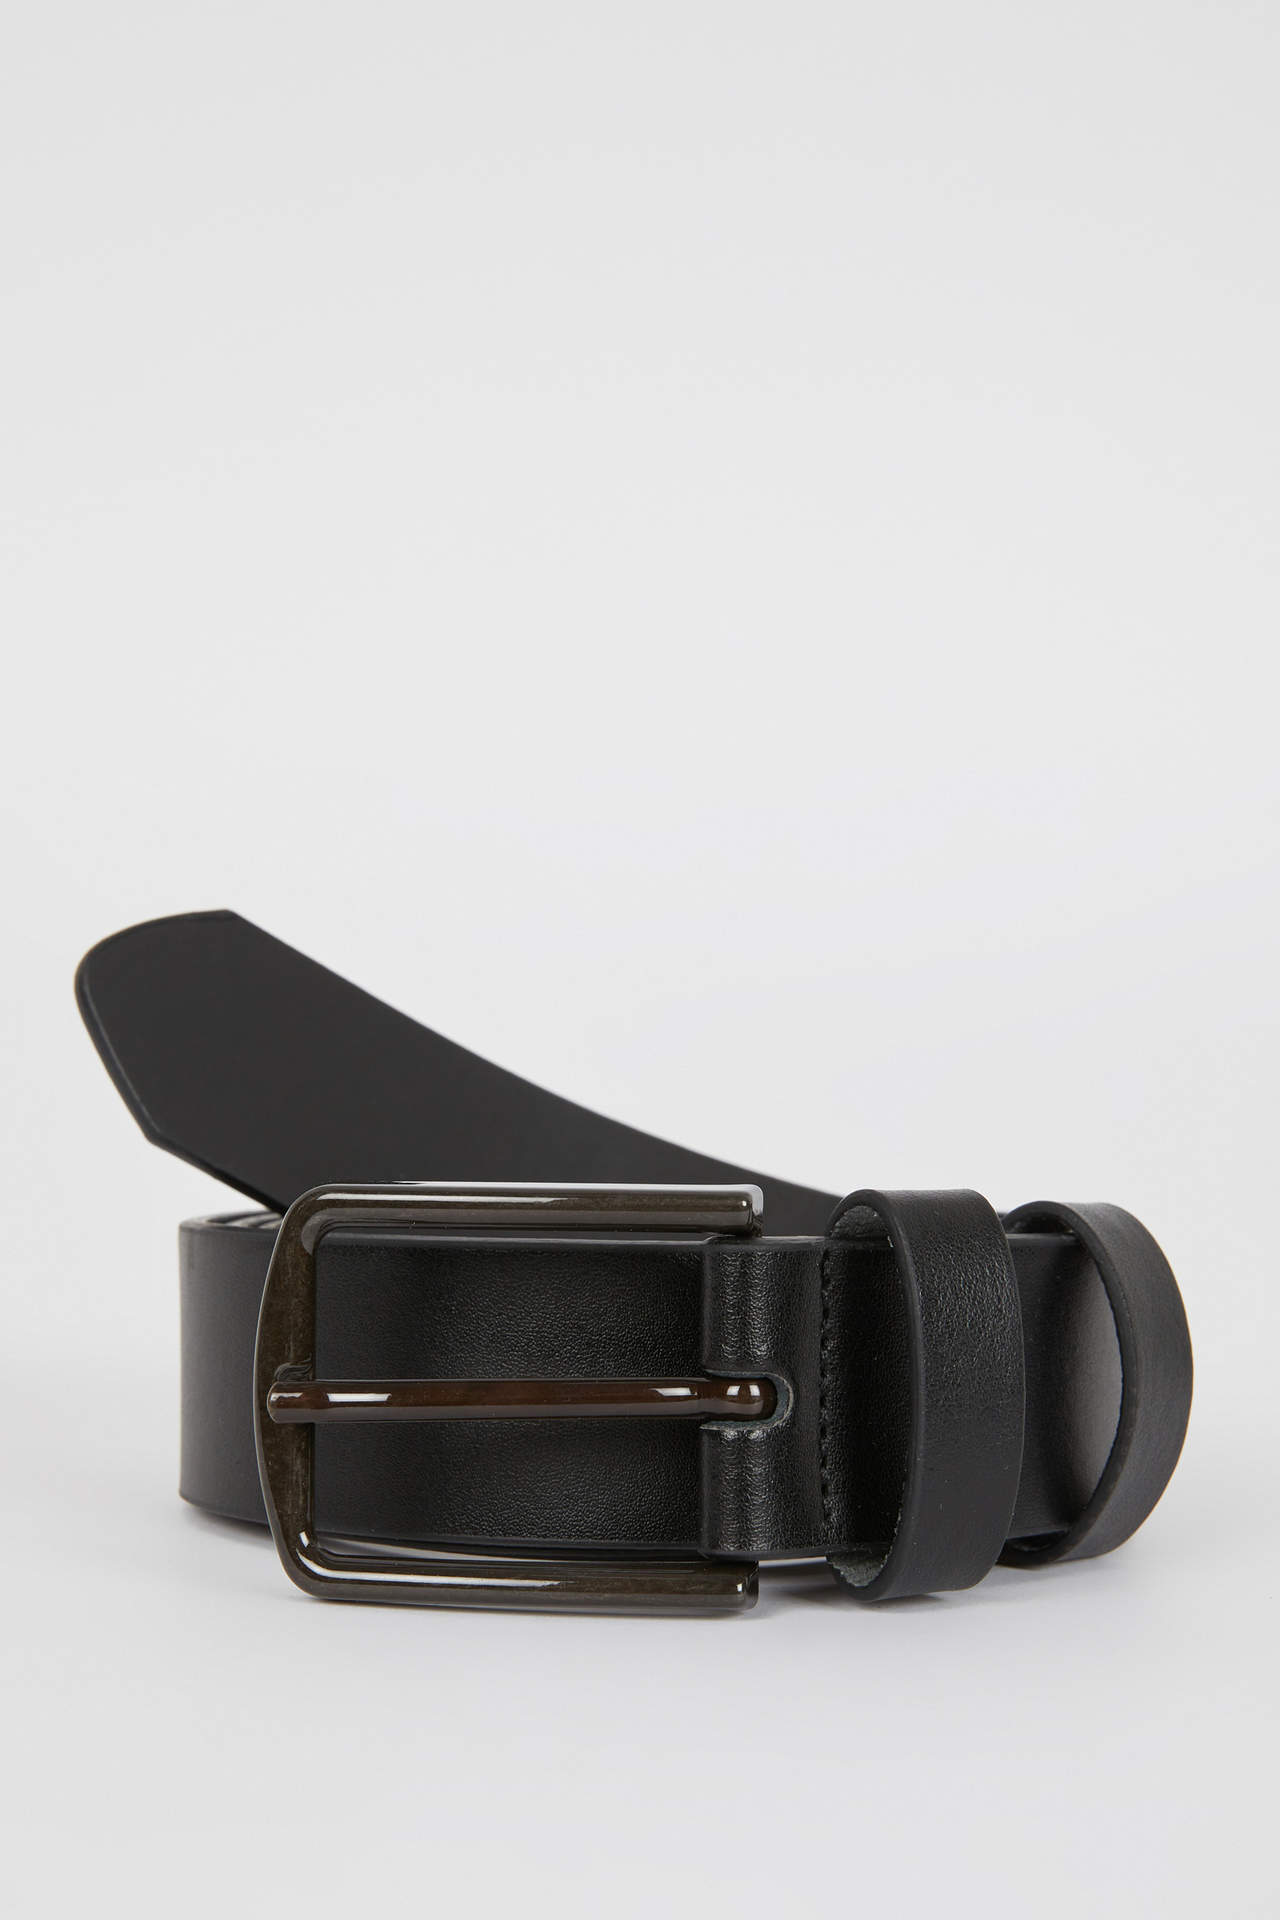 DEFACTO Men Rectangle Buckle Faux Leather Classic Belt